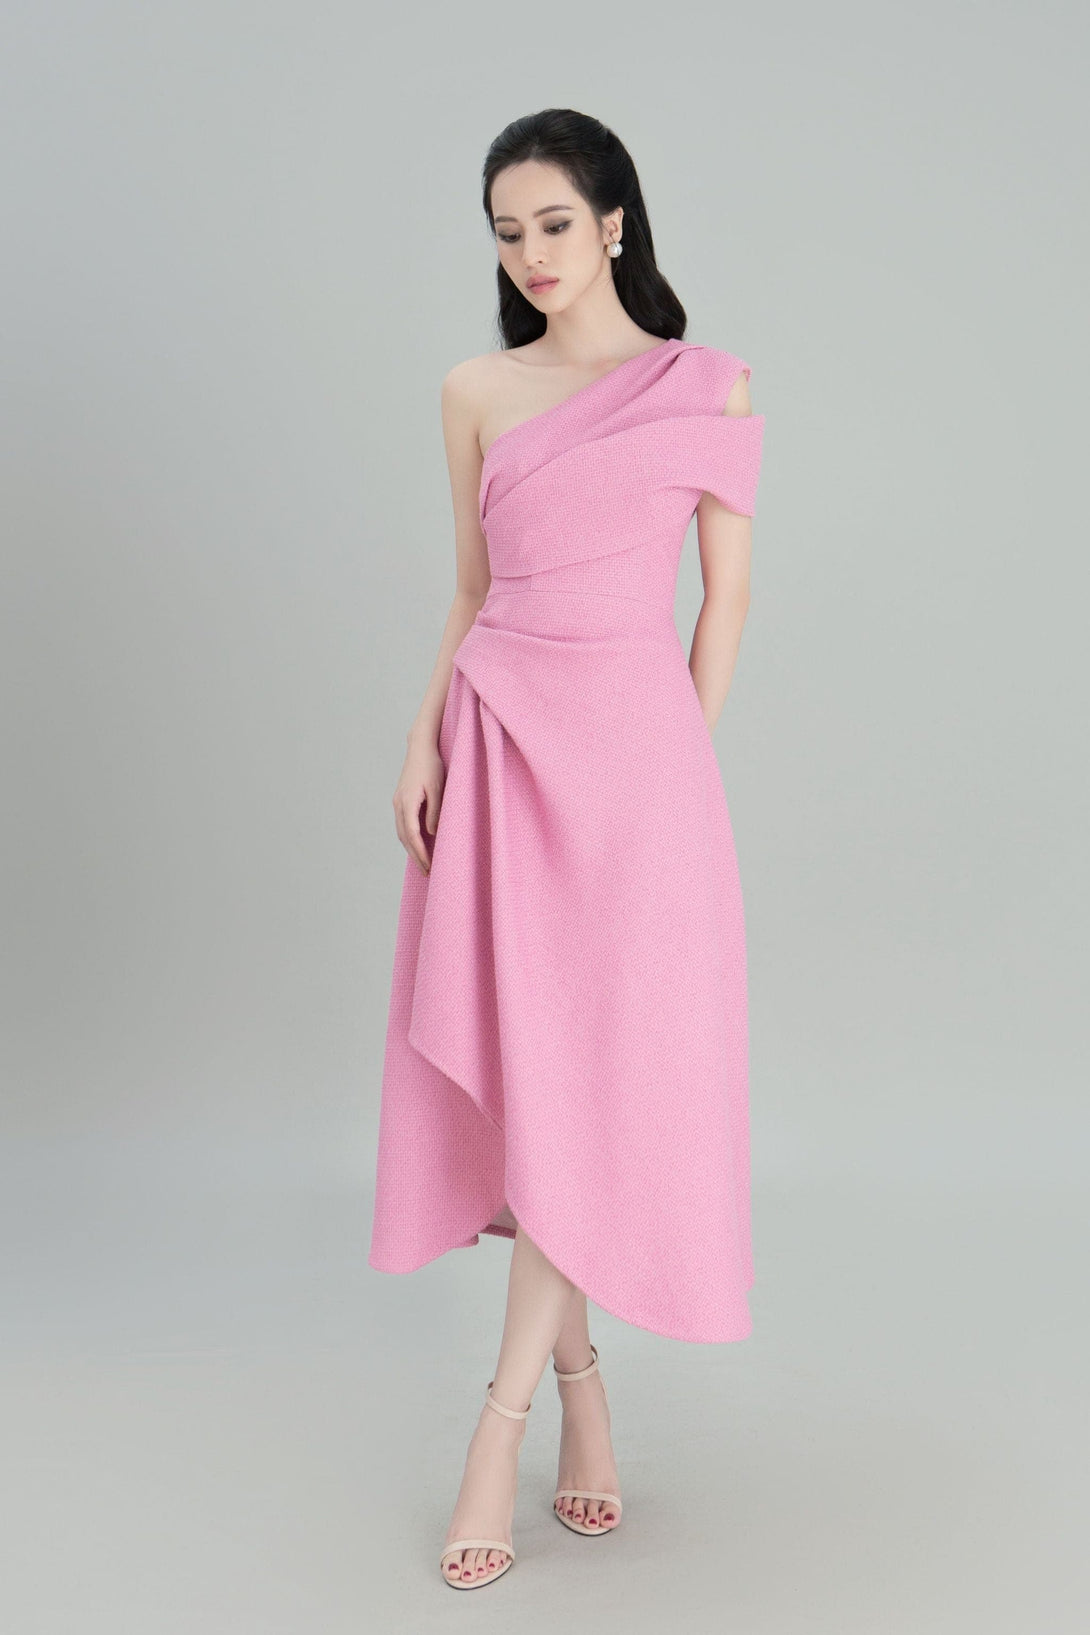 DARLING DIVA L / Pink Silvie One Shoulder Dress